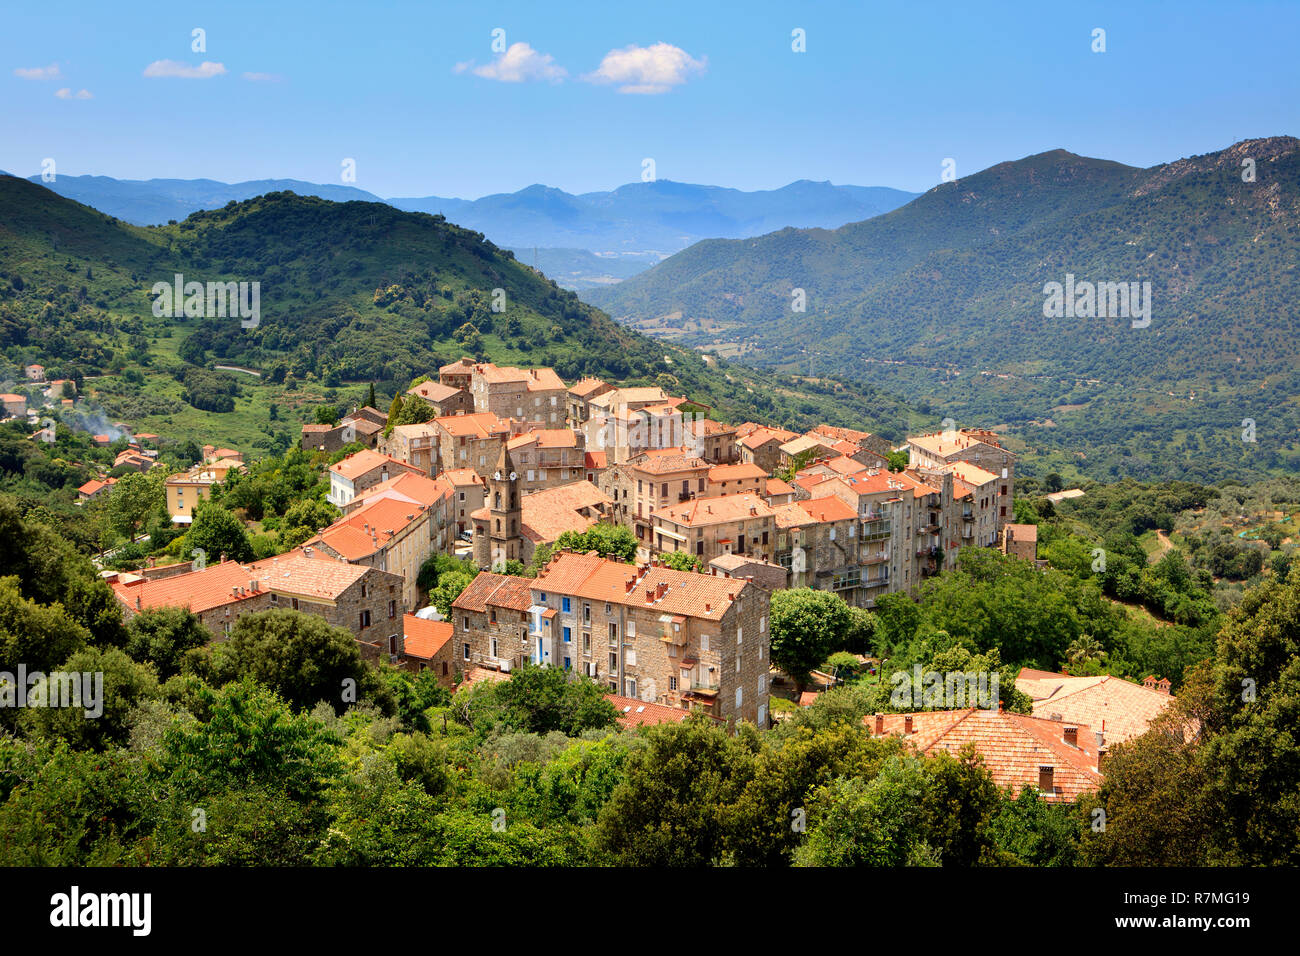 Das Dorf Sainte-Lucie-de-Tallano in den Bergen im südlichen Teil der Insel Korsika, Frankreich. Stockfoto